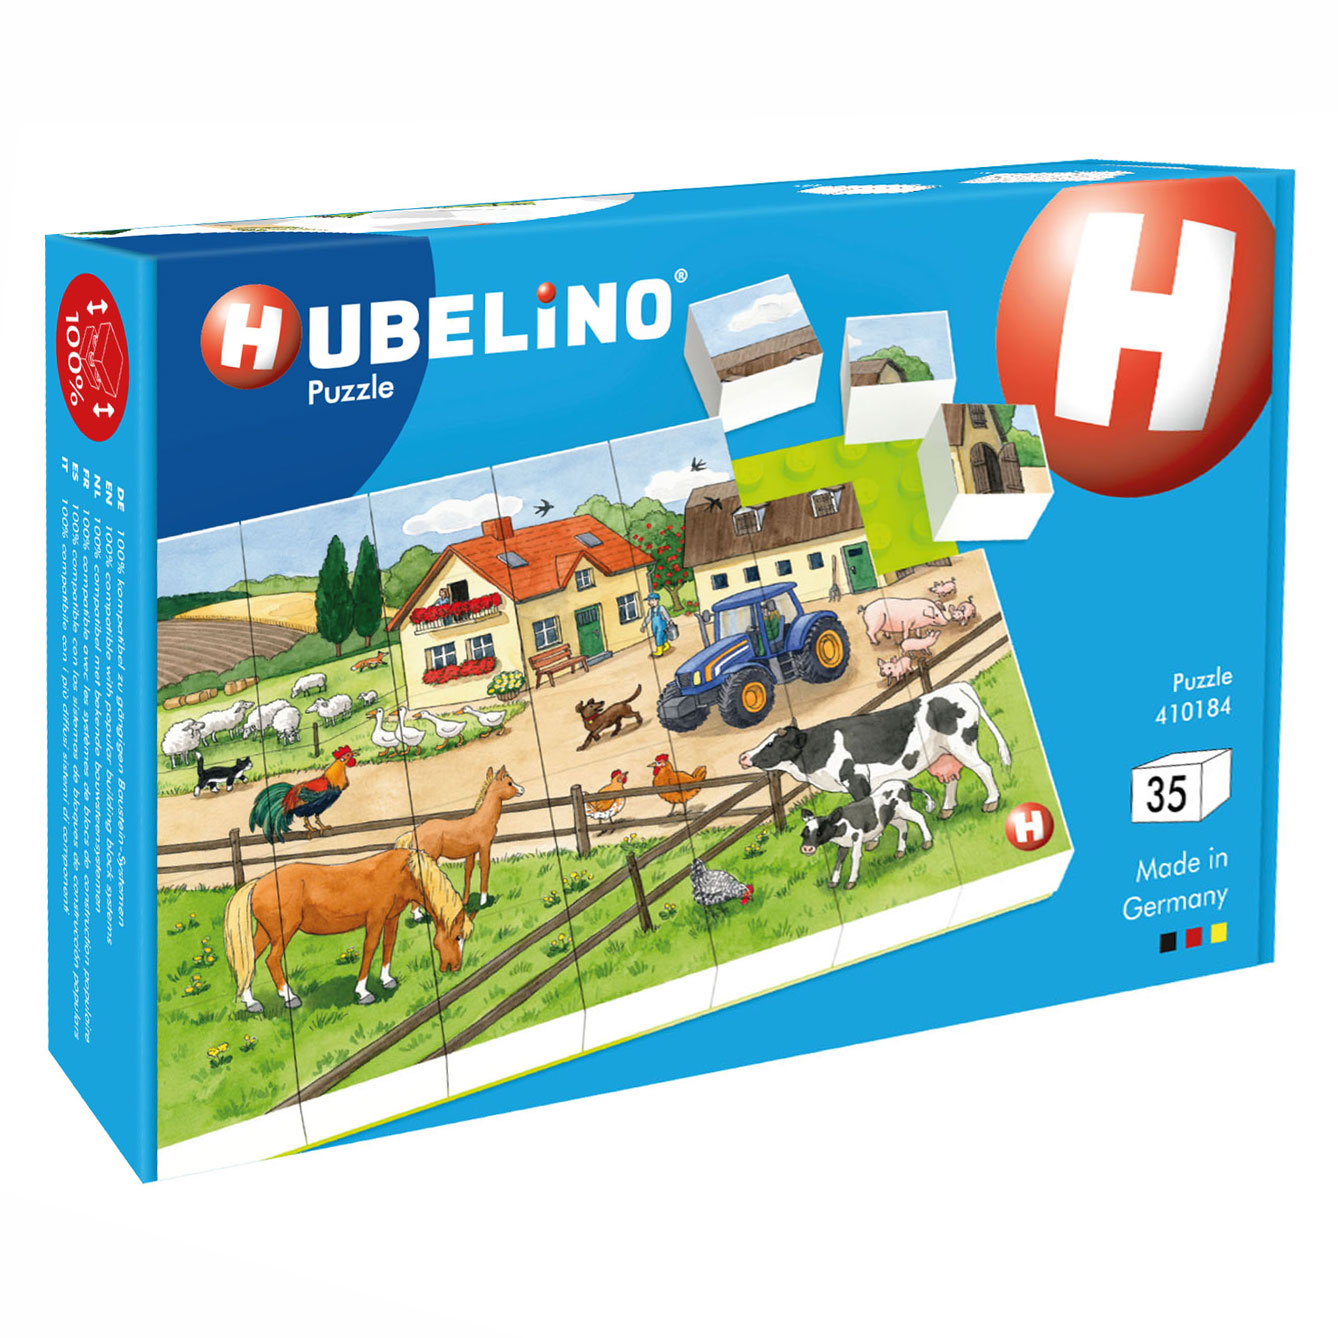 Hubelino Blockpuzzle Leben auf dem Bauernhof, 35 Teile.